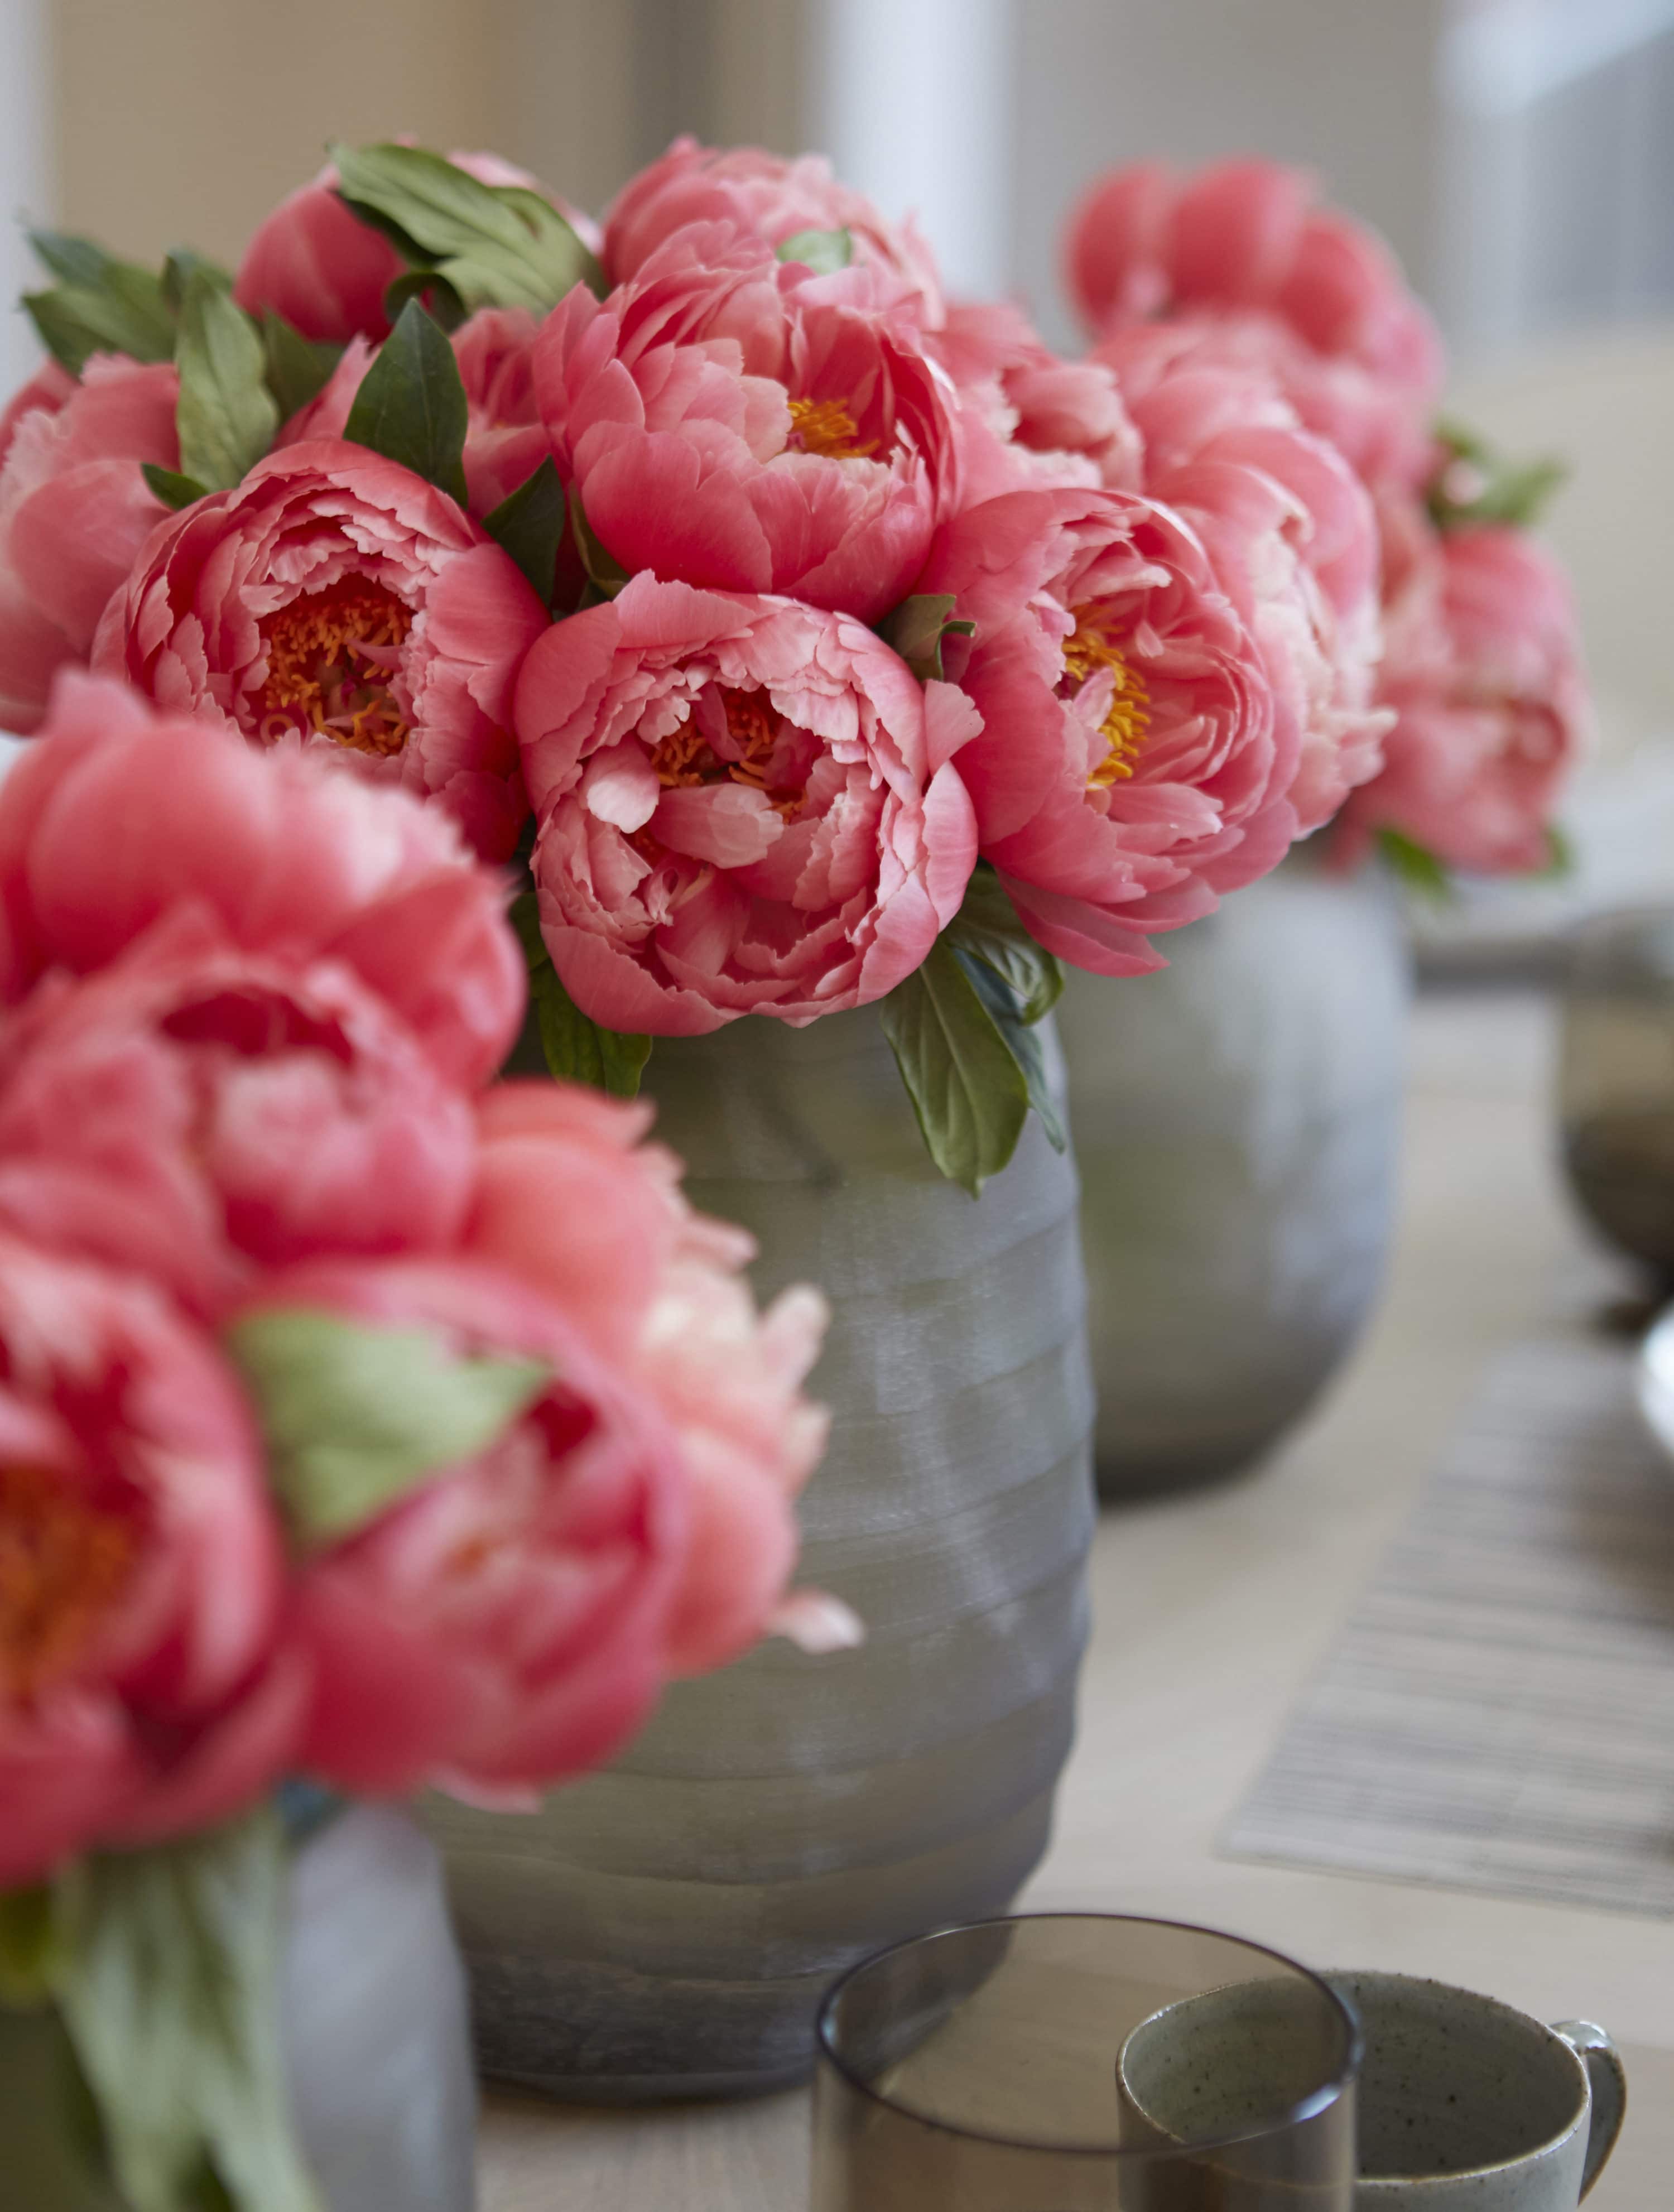 Flowers, floral, interior design, luxury interior design